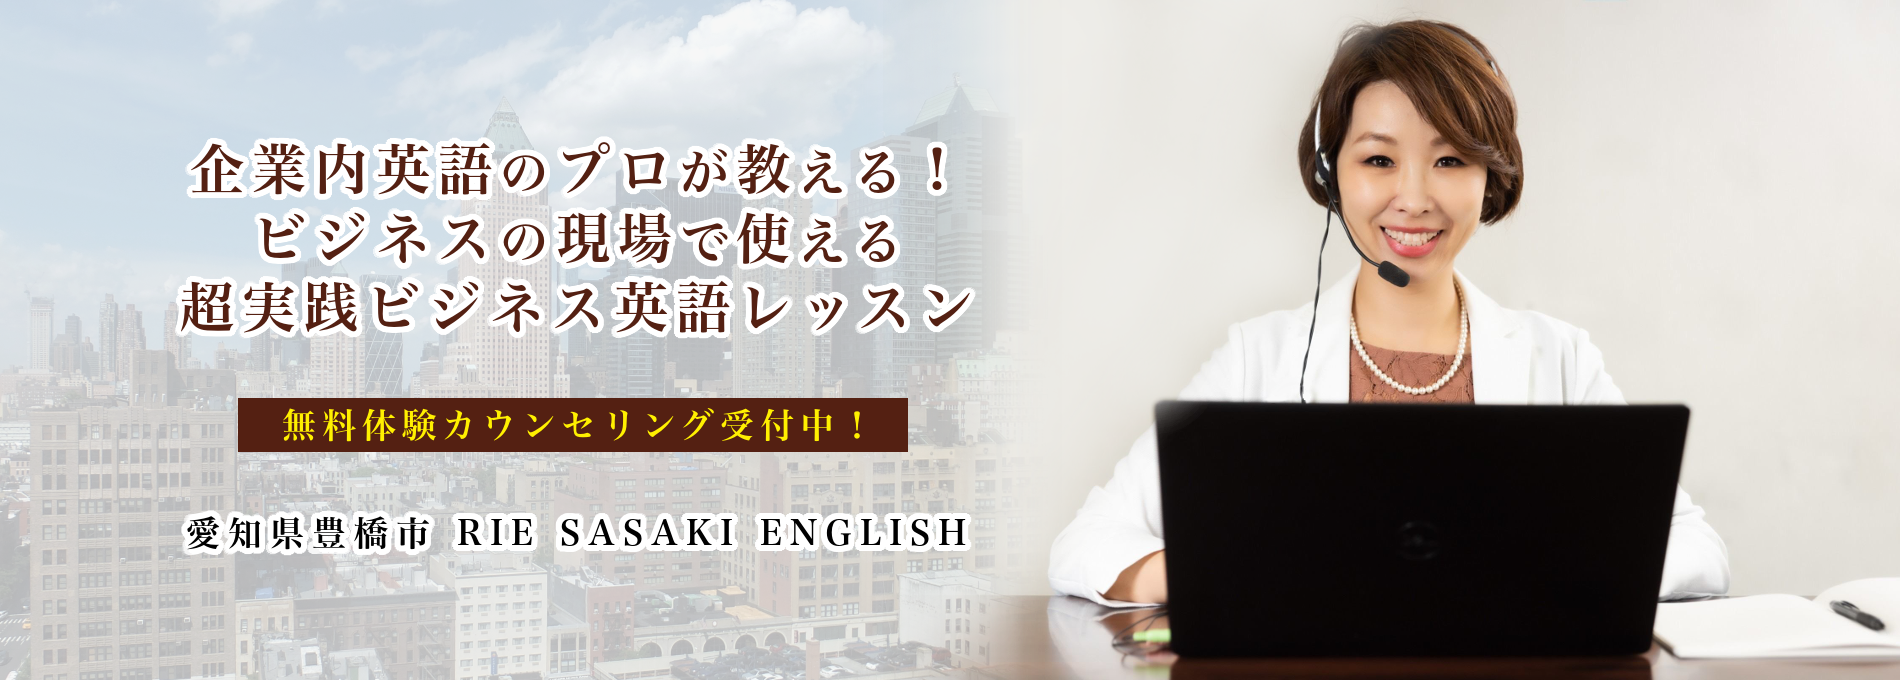 豊橋市マンツーマンビジネス英語 RIE SASAKI ENGLISH